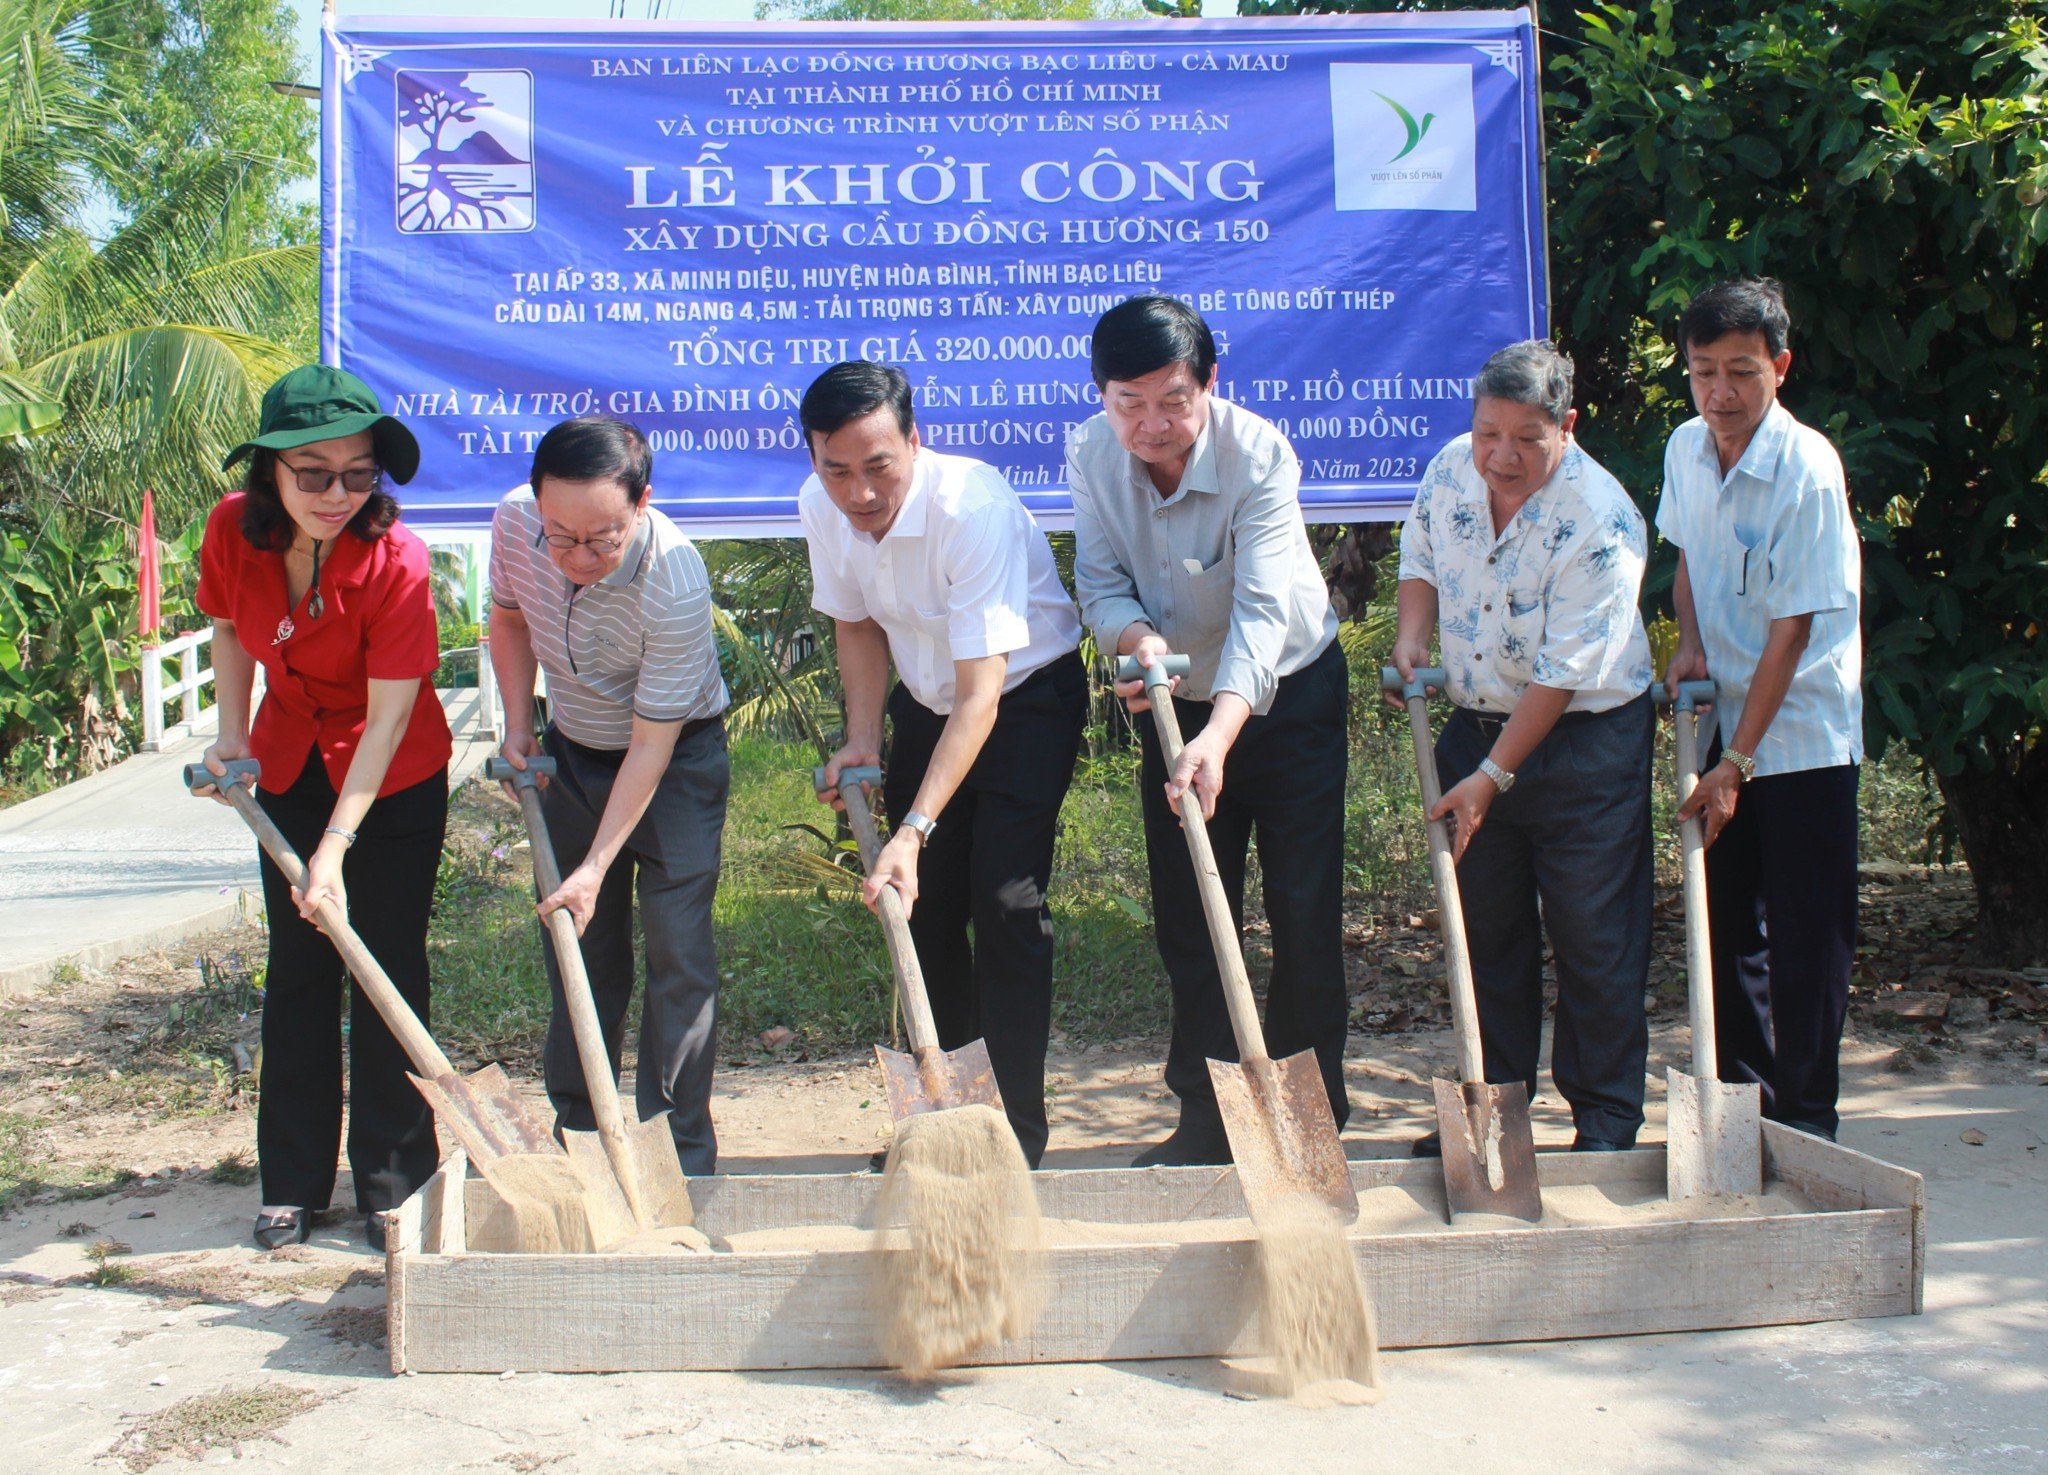 Khởi công xây 2 cây cầu Đồng hương tại huyện Hòa Bình và huyện Đông Hải tỉnh Bạc Liêu